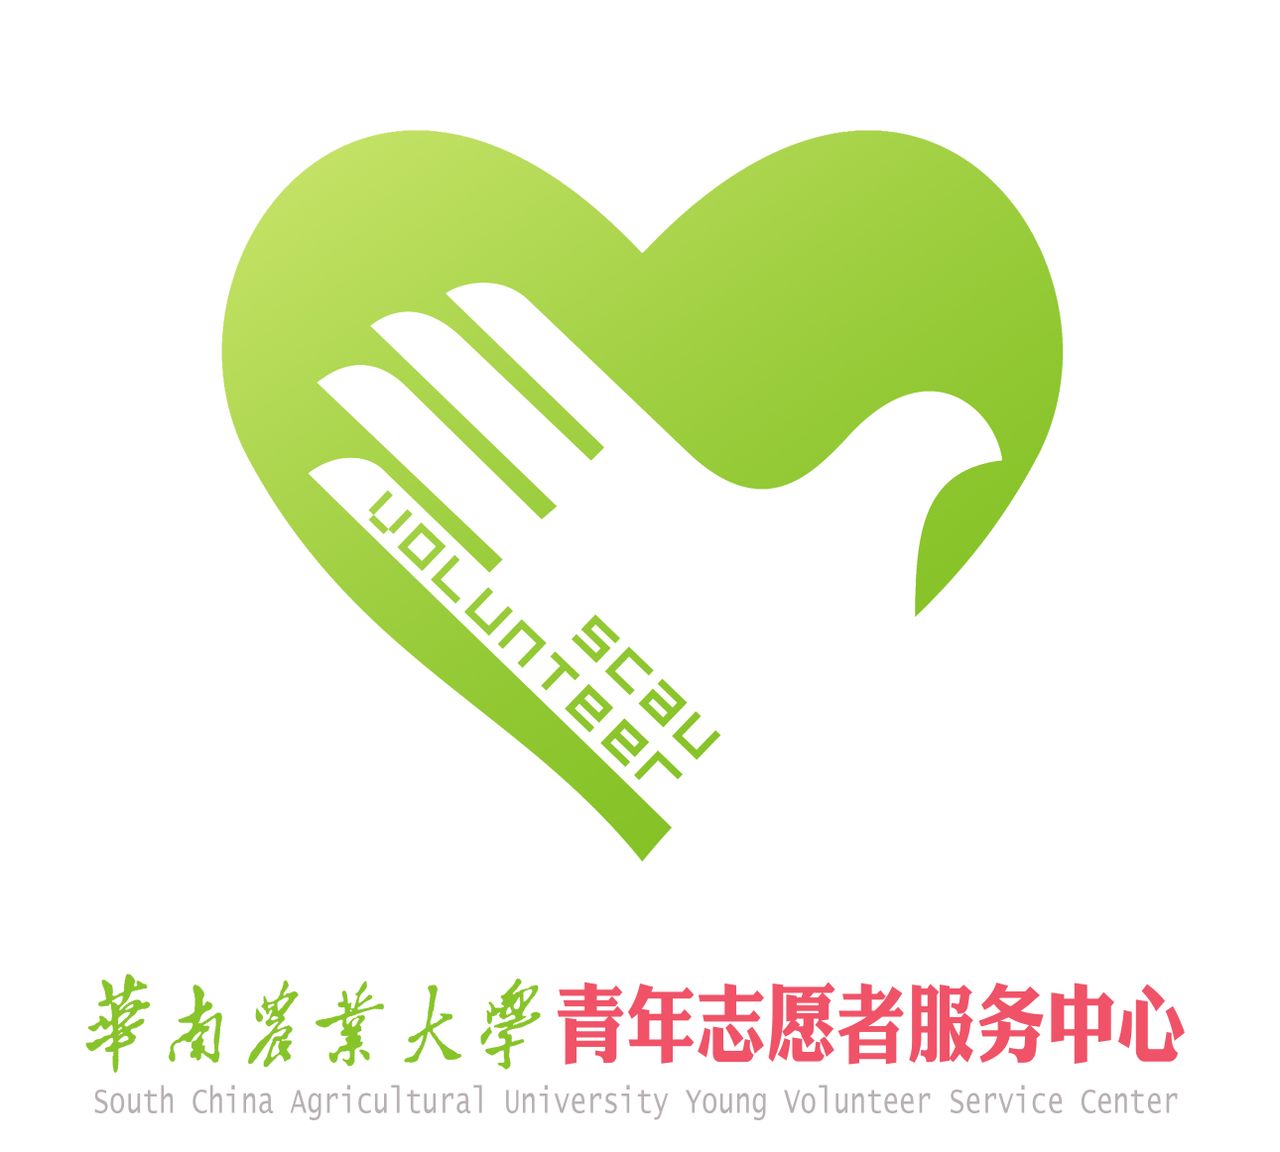 華南農業大學青年志願者服務中心